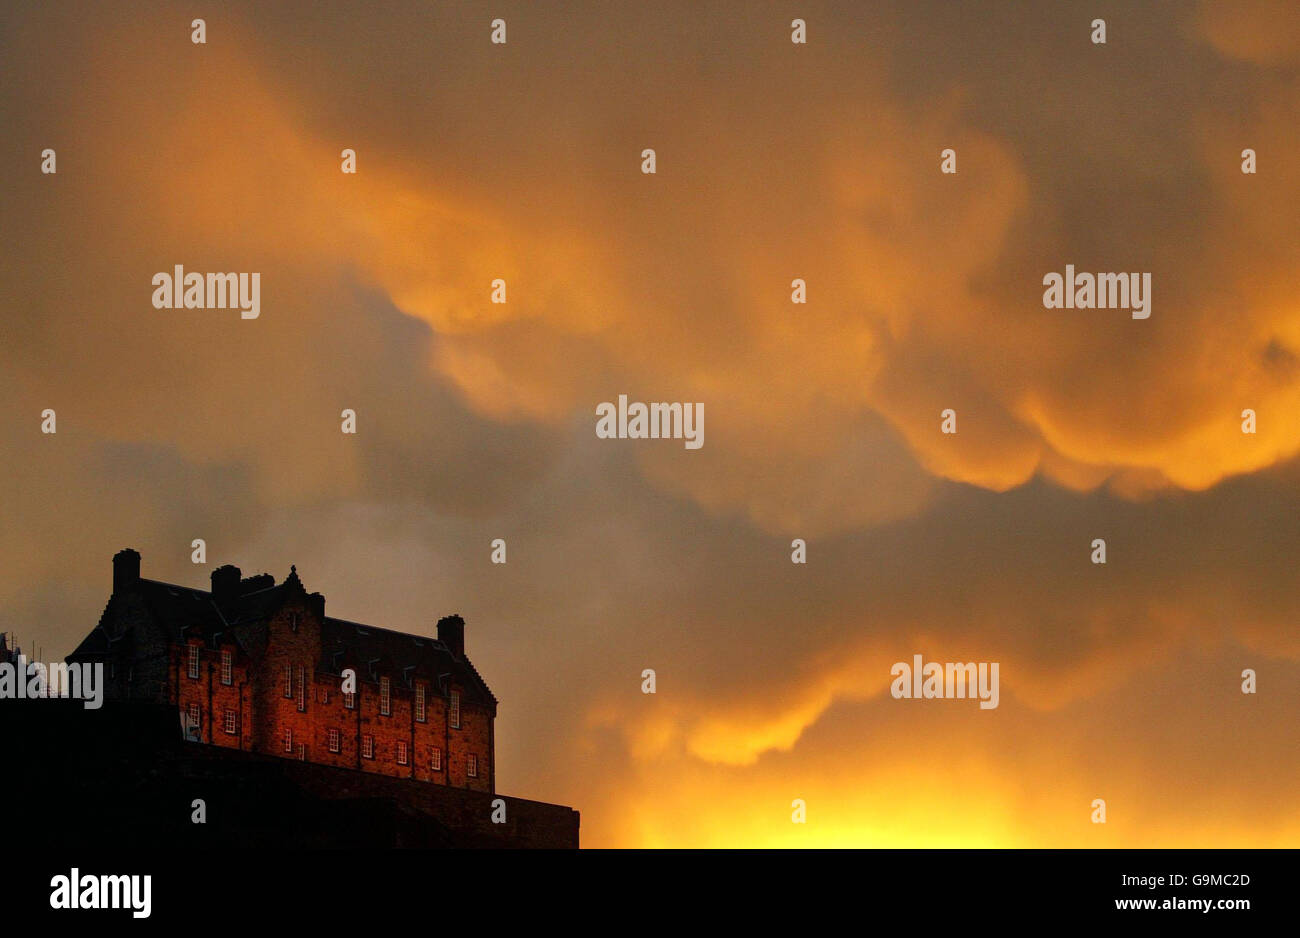 Le nubi della tempesta si radunano sul Castello di Edimburgo prima che inizino le celebrazioni di Hogmanay. Foto Stock